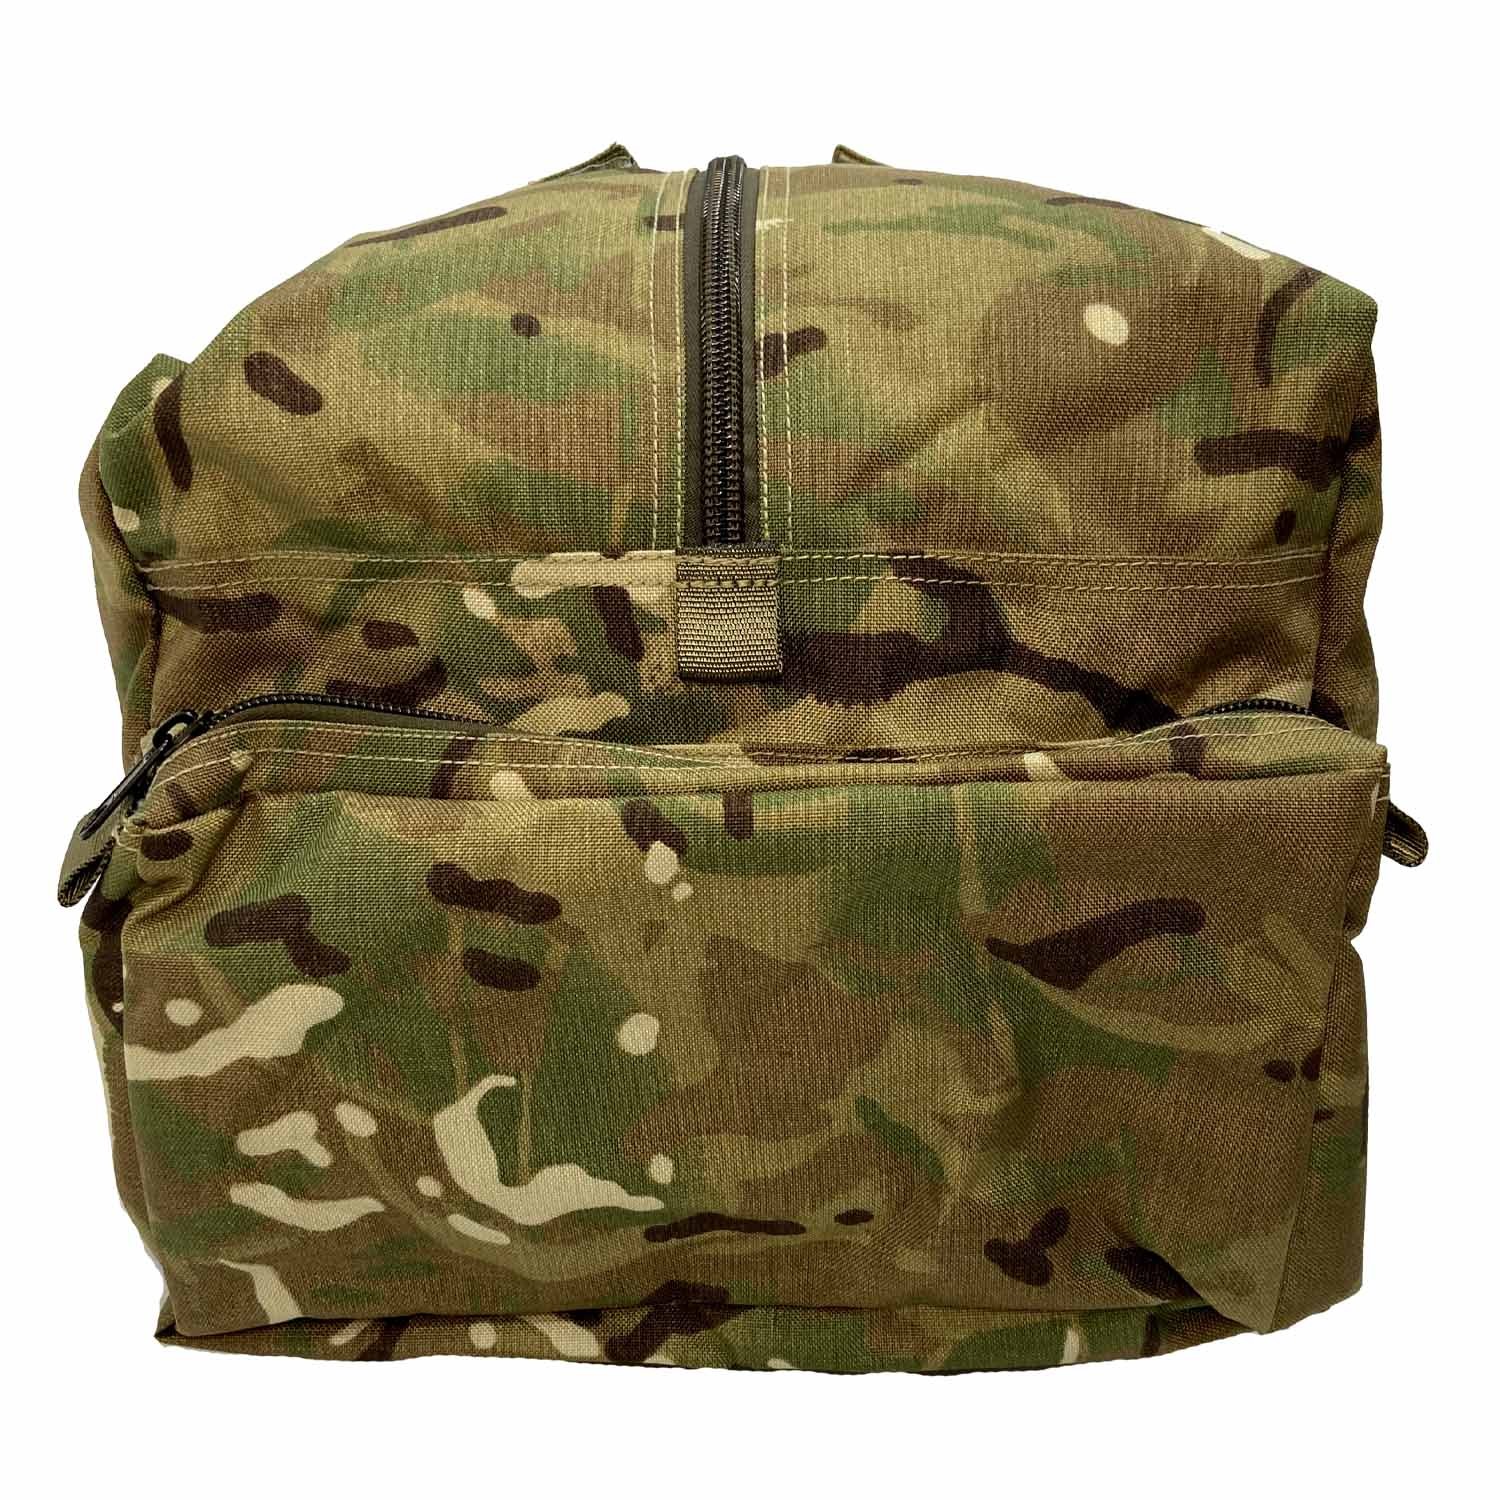 Standard Travel Bag - MTP